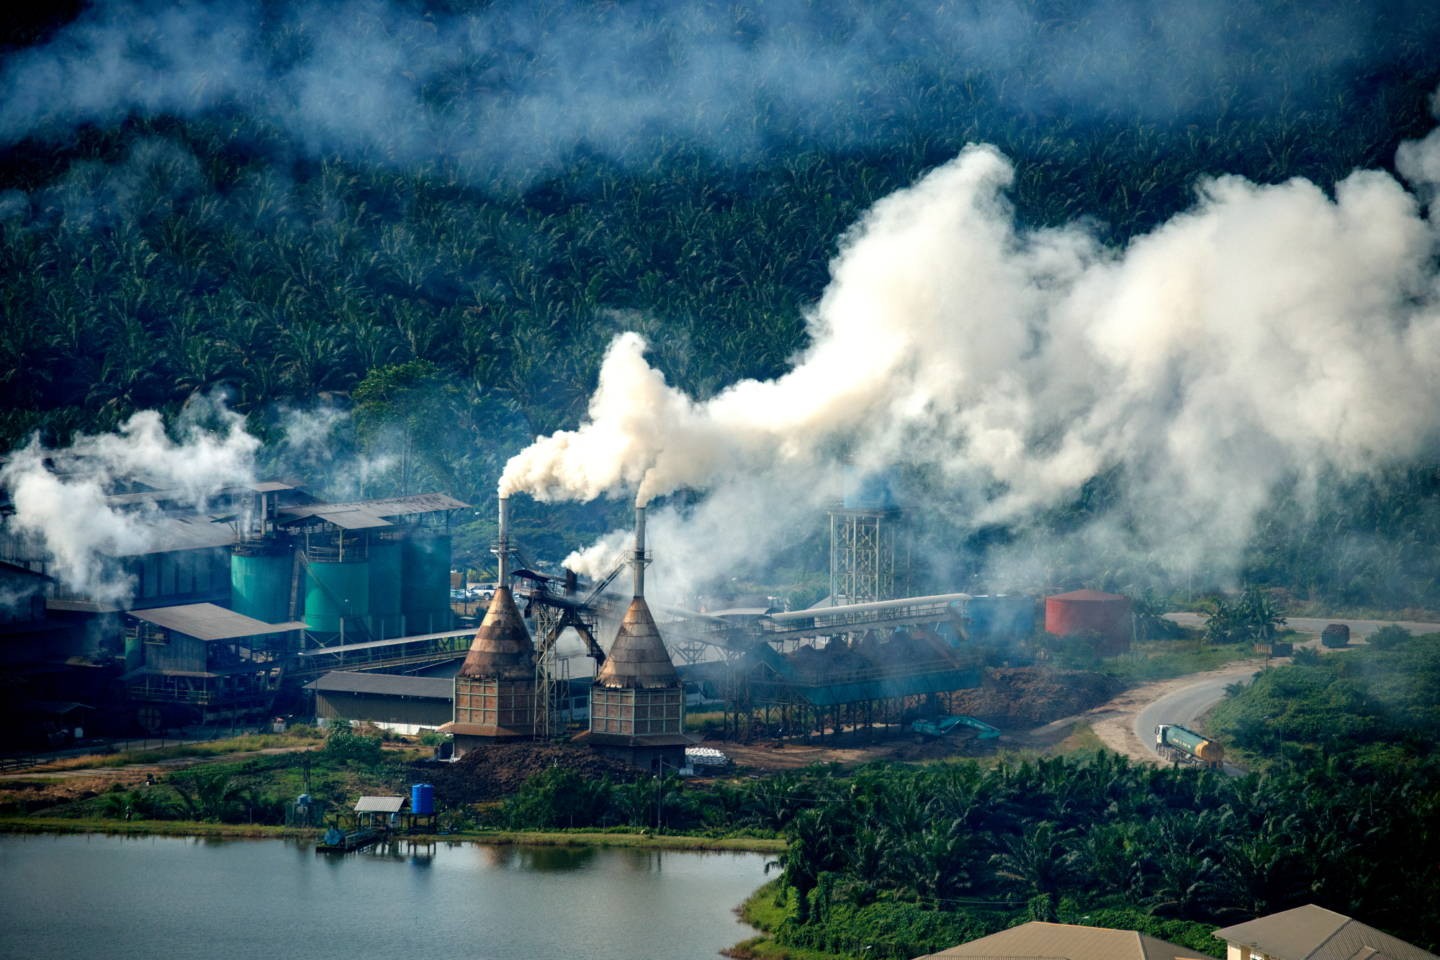 Завод по переработке пальмового масла на Борнео, Малайзия. Фотограф Паскаль Мэтр